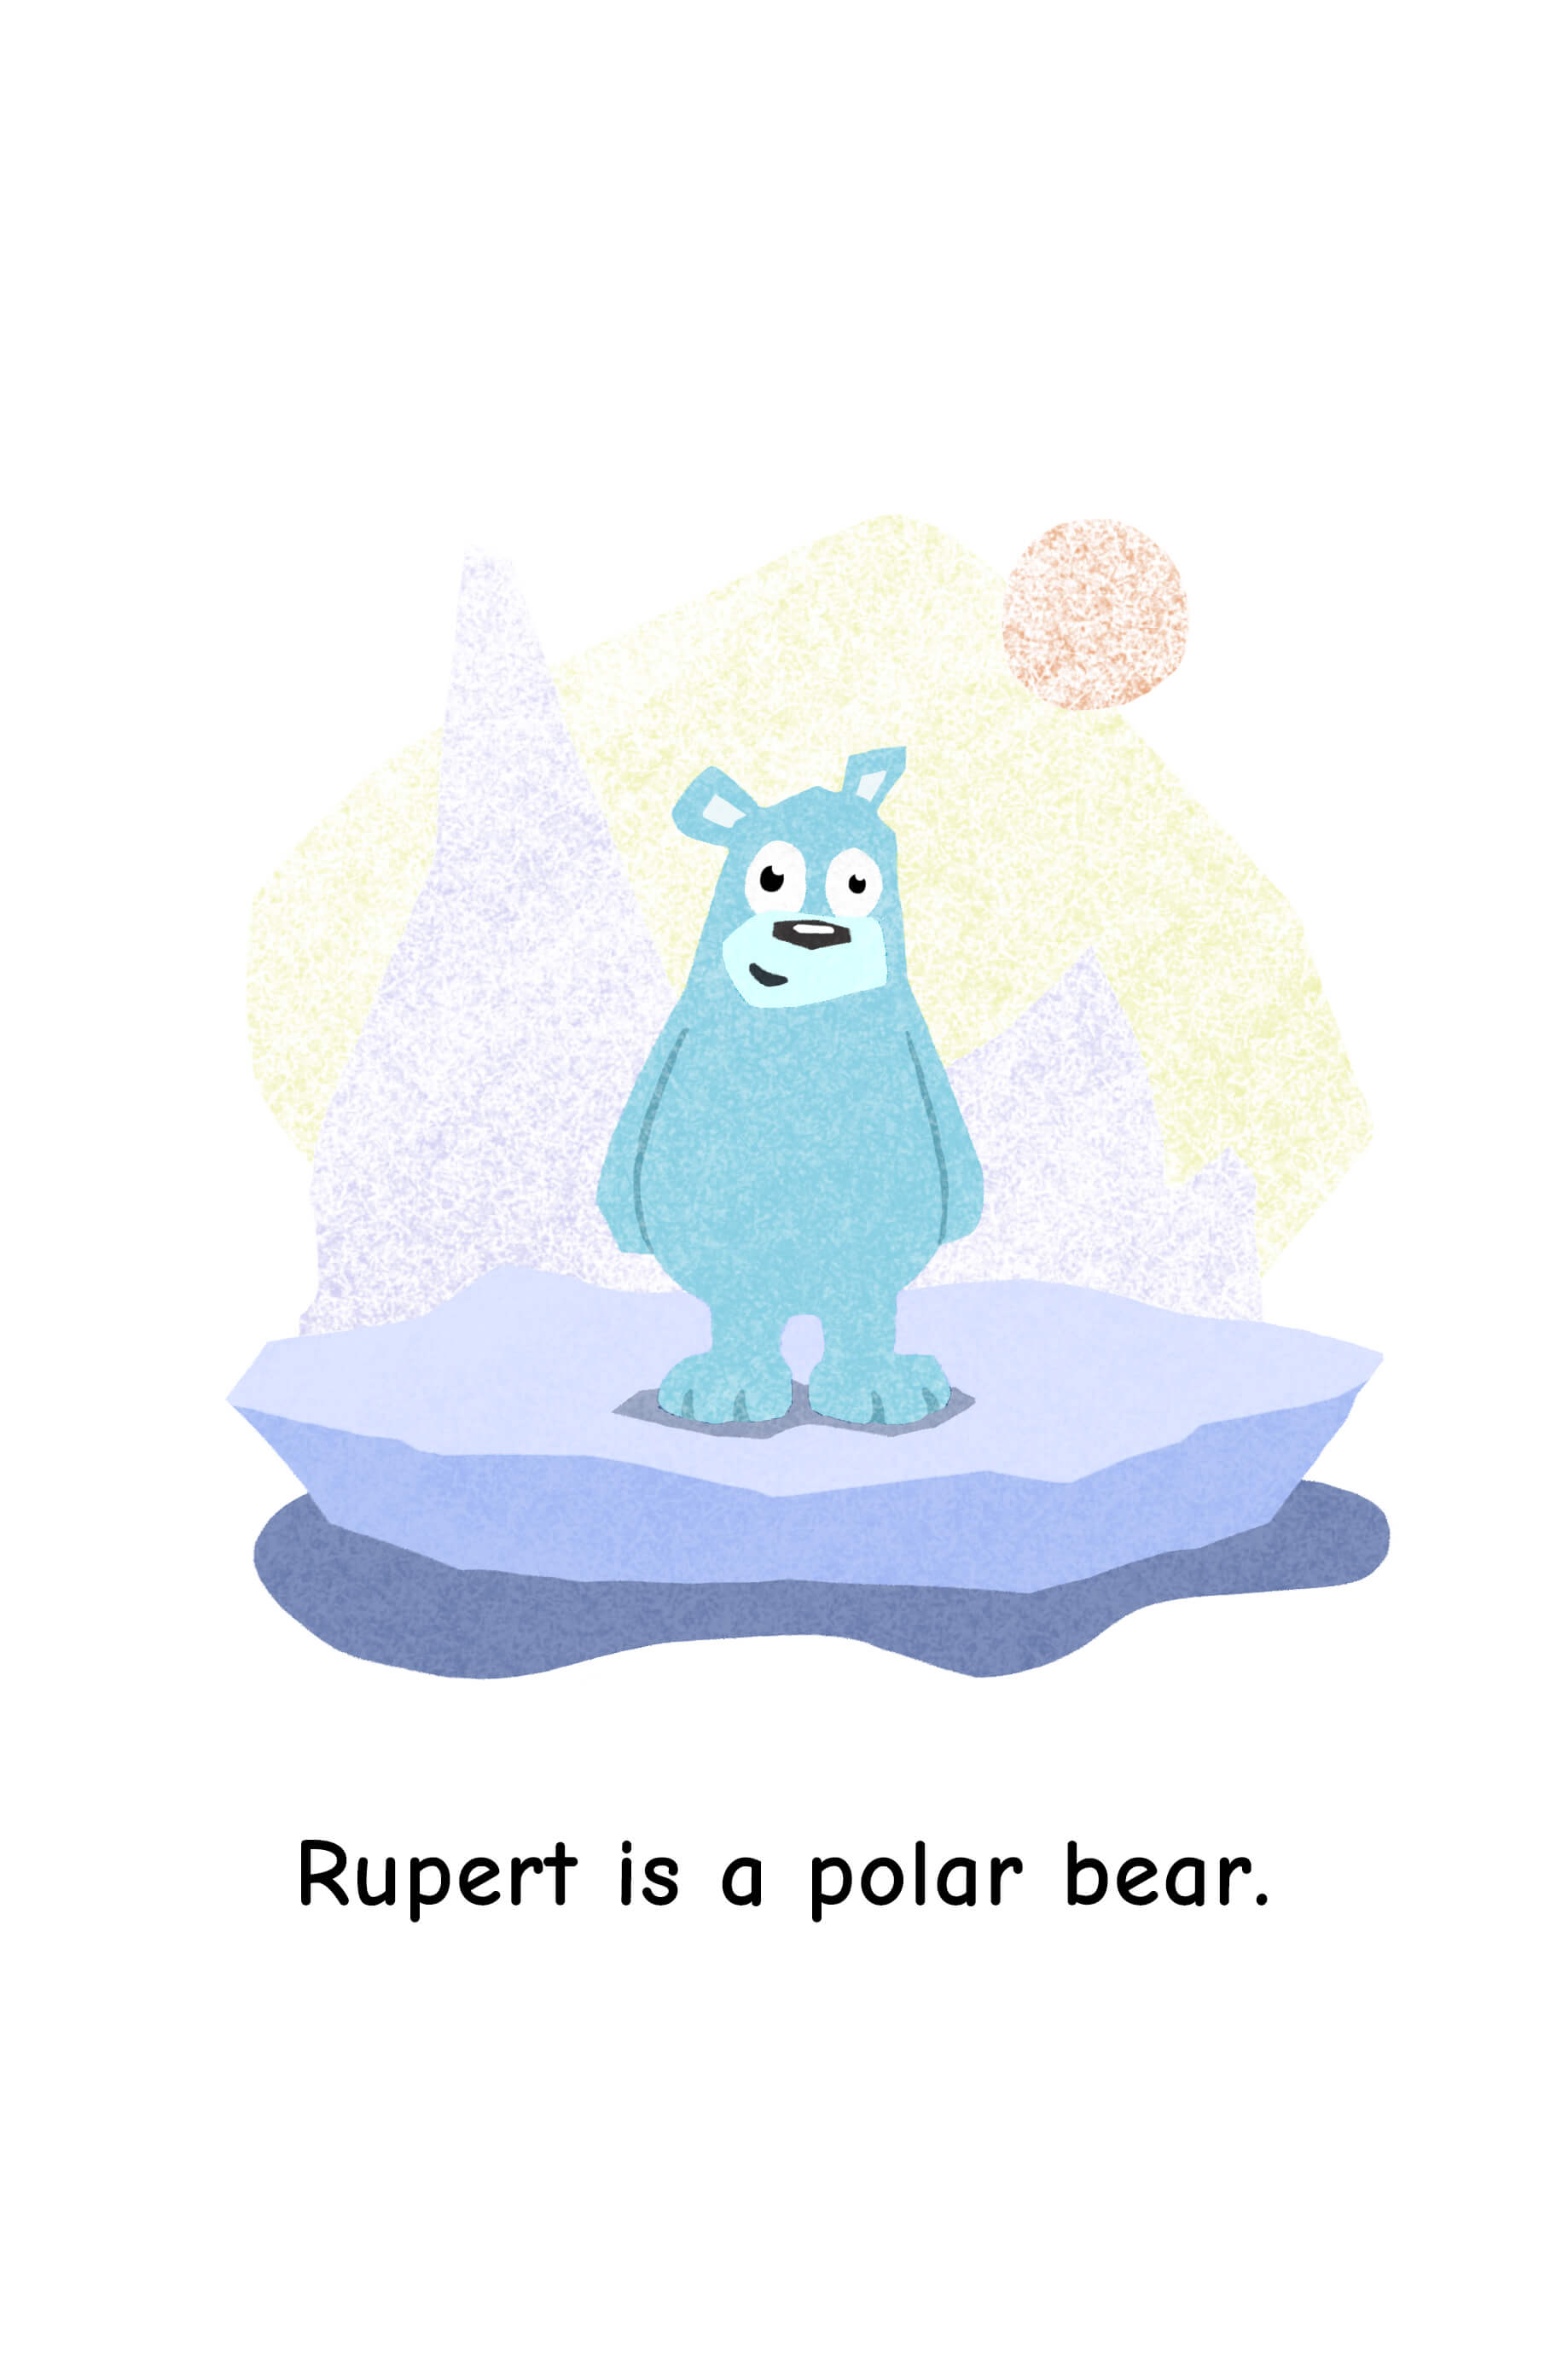 Rupert is a polar bear